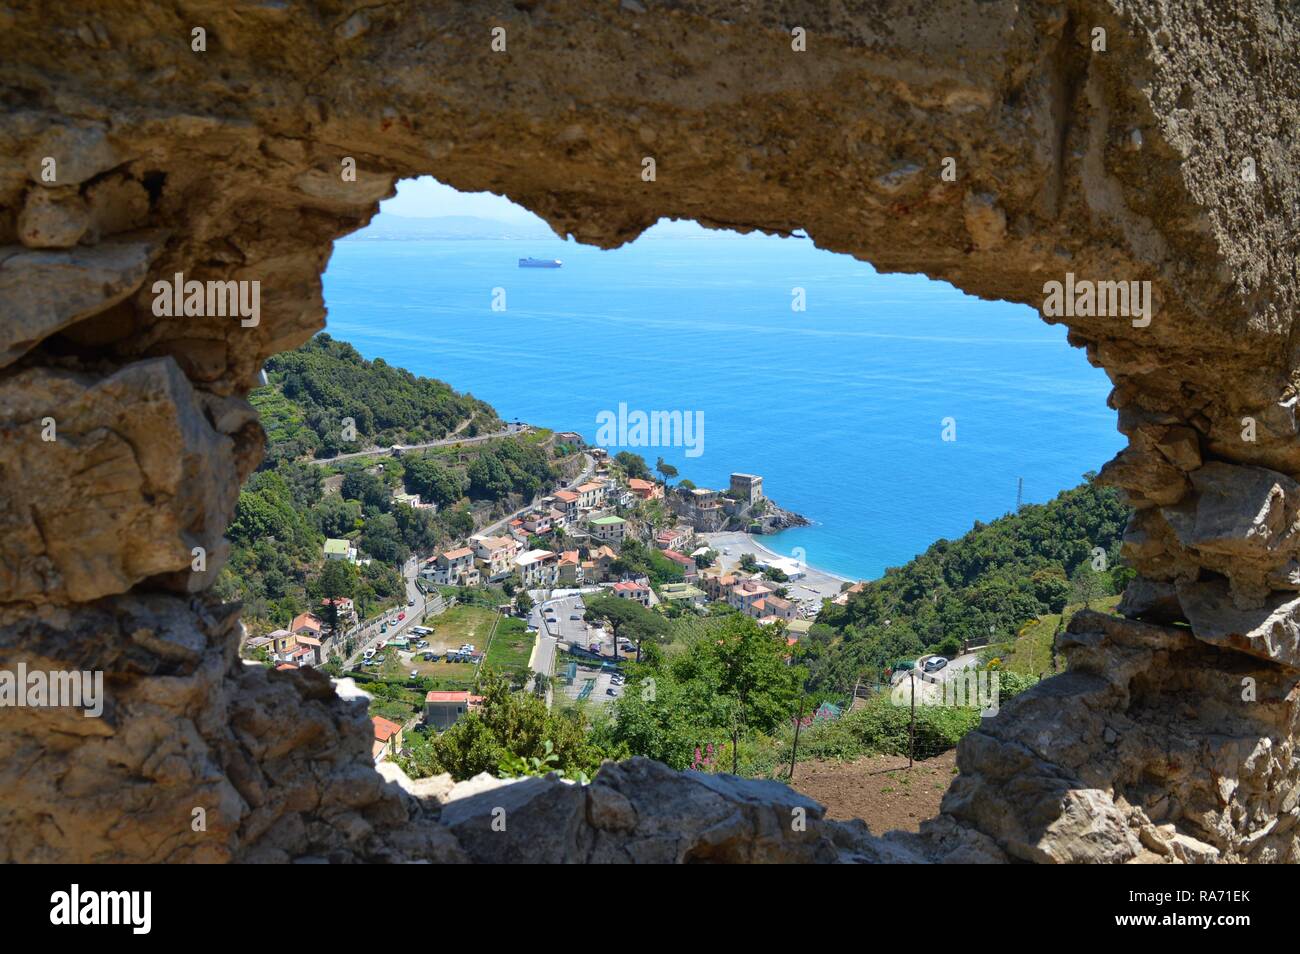 Seascape on the Amalfi coast, in Italy Stock Photo